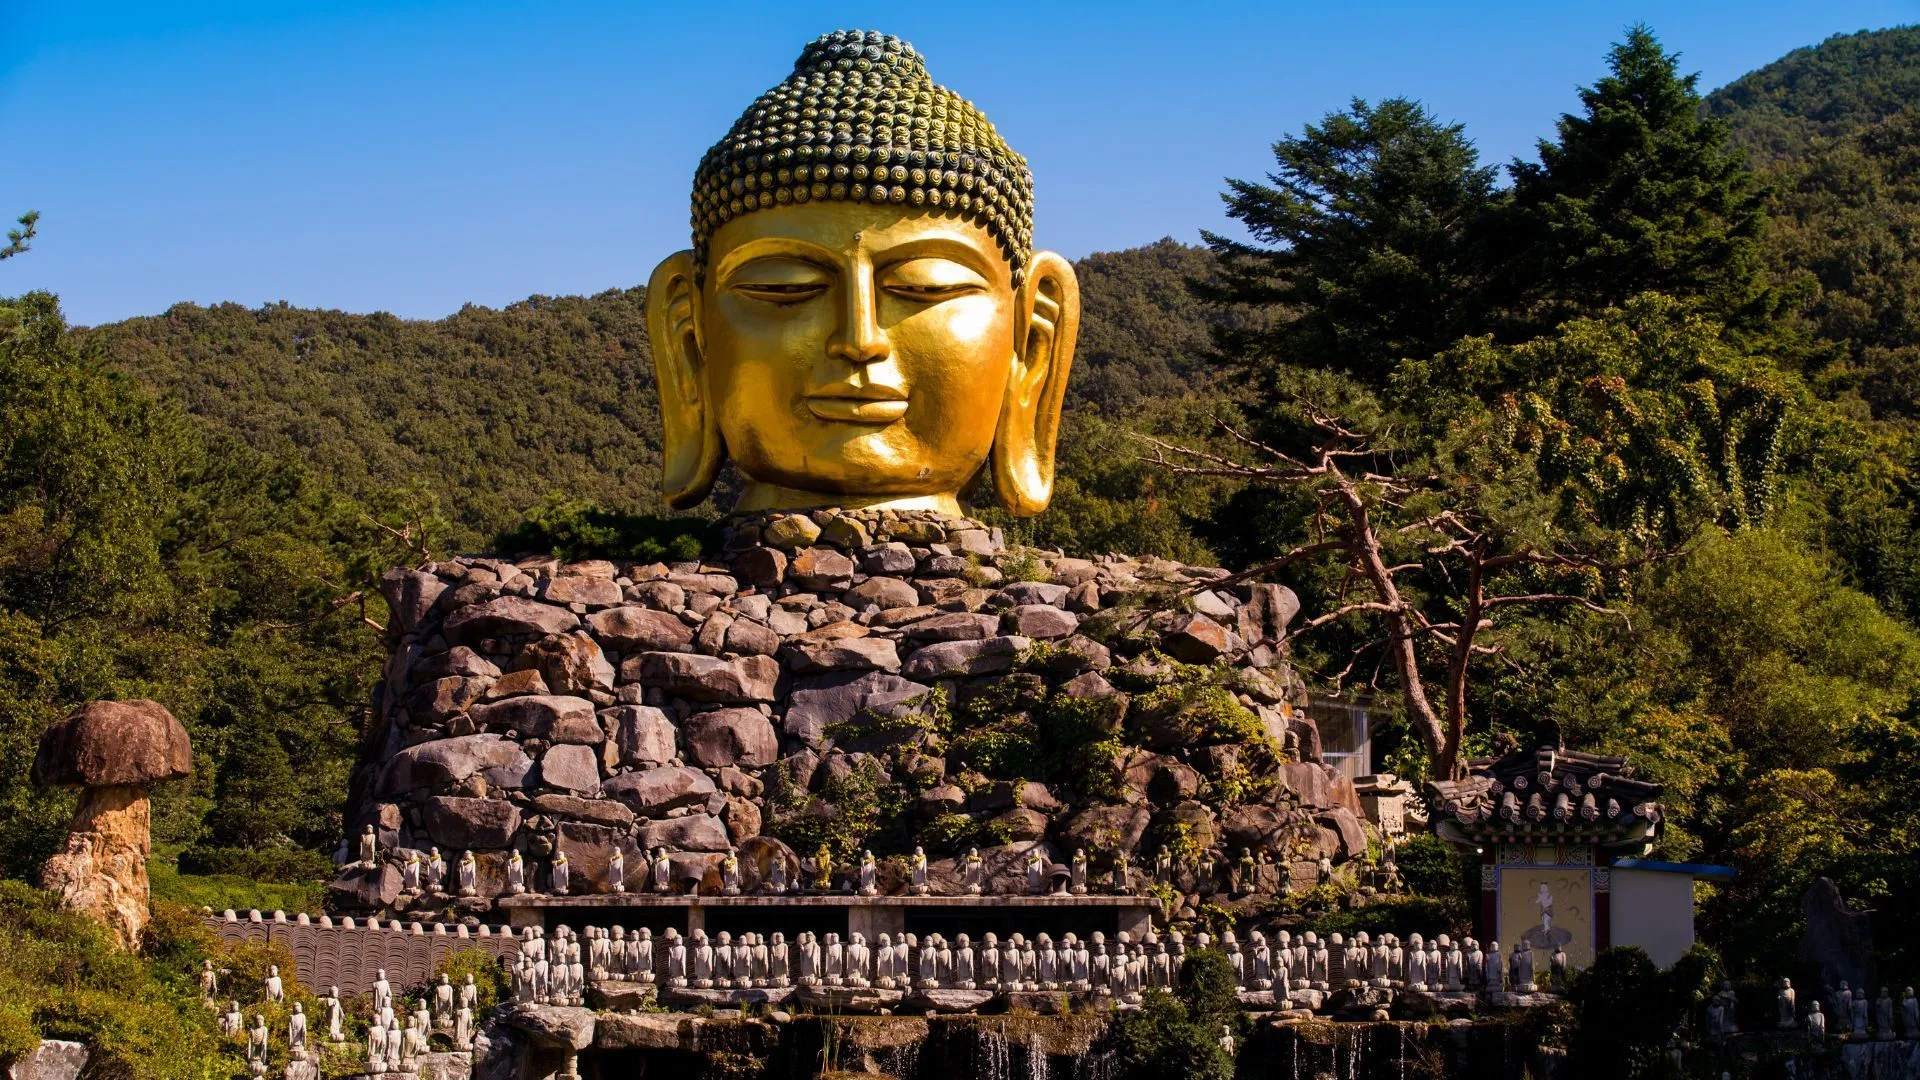 Đền Waujeongsa Đền Waujeongsa Tín dụng hình ảnh: Susann Yodyiam / Shutterstock Được thành lập vào năm 1970 bởi Kim Hae-Geun, chùa Waujeongsa là biểu tượng của niềm hy vọng cho sự thống nhất đất nước và là nơi khai sinh của Dòng Niết bàn Phật giáo Hàn Quốc.  Đáng chú ý, ở lối vào, du khách được chào đón bởi Buldu, tác phẩm điêu khắc đầu Phật lớn nhất và bên trong ngôi chùa có một bức tượng Wabul (tượng Phật nằm) quan trọng, được chế tác từ cây bách xù Indonesia, cao 3 mét và dài 12 mét.